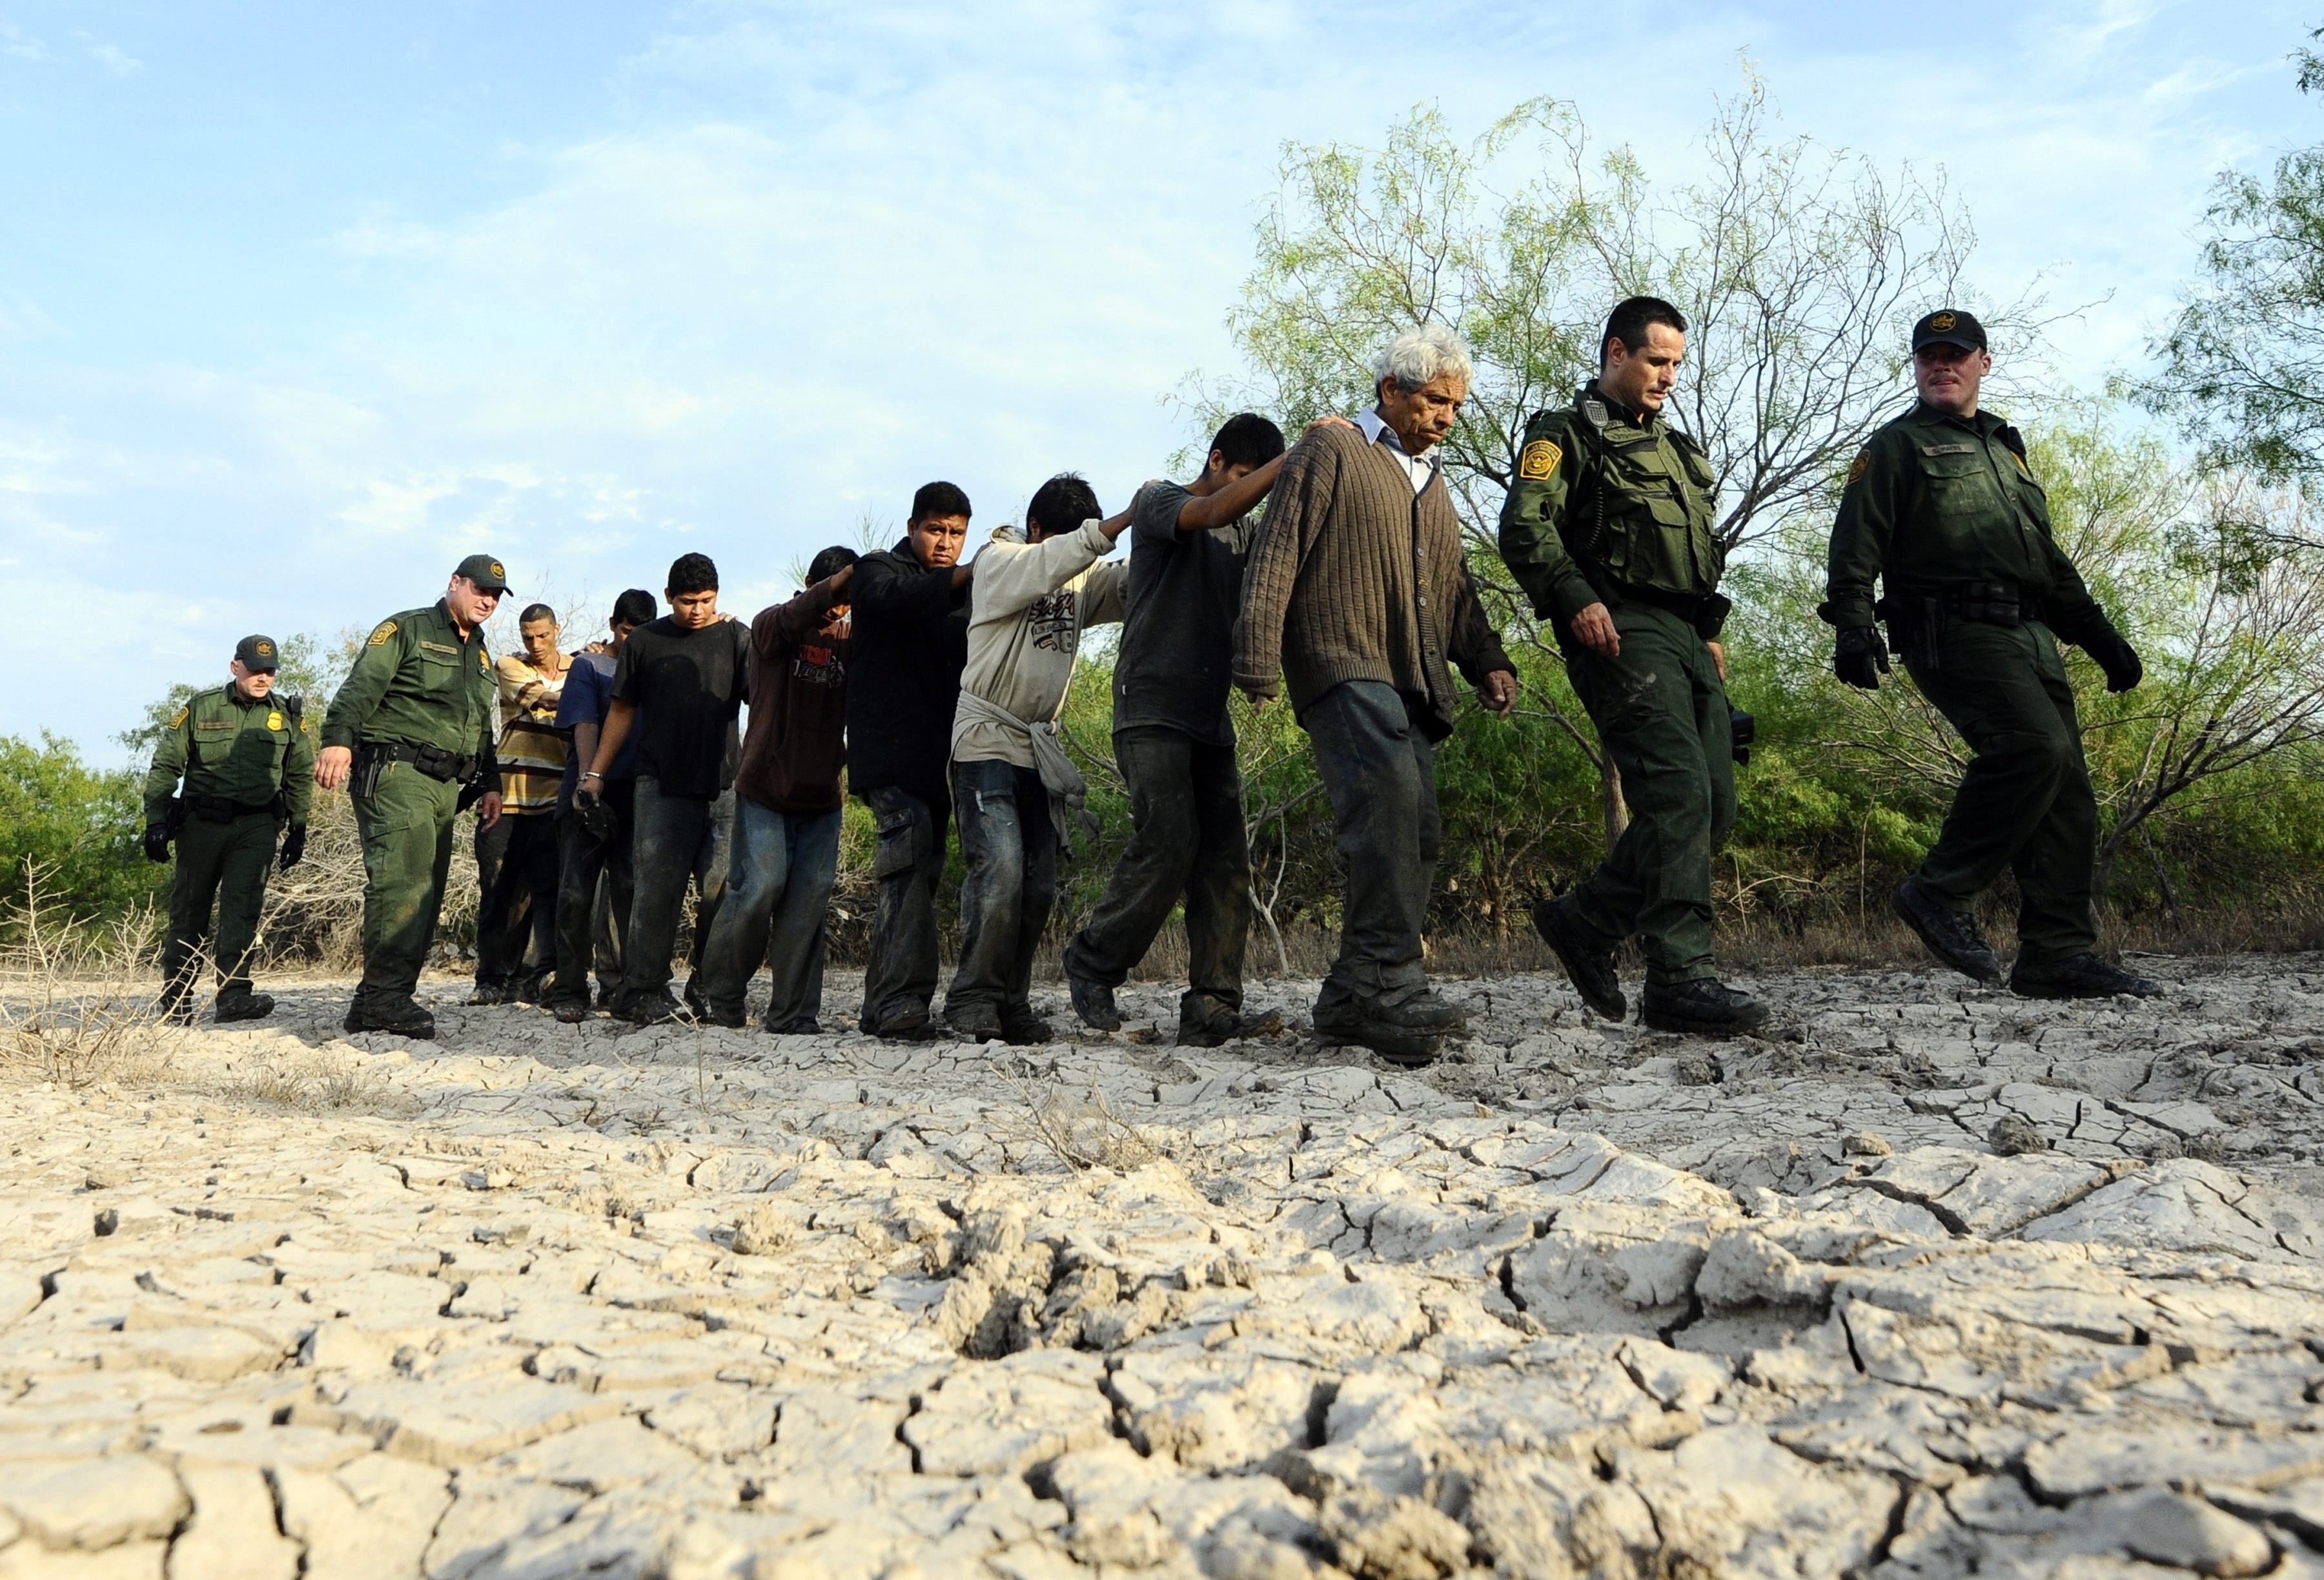  Agentes fronterizos custodian a un grupo de migrantes detenidos en Mcallen, Texas. El número de guatemaltecos que llegan a la frontera sur ha bajado en los últimos meses. (Foto Prensa Libre: Hemeroteca PL)